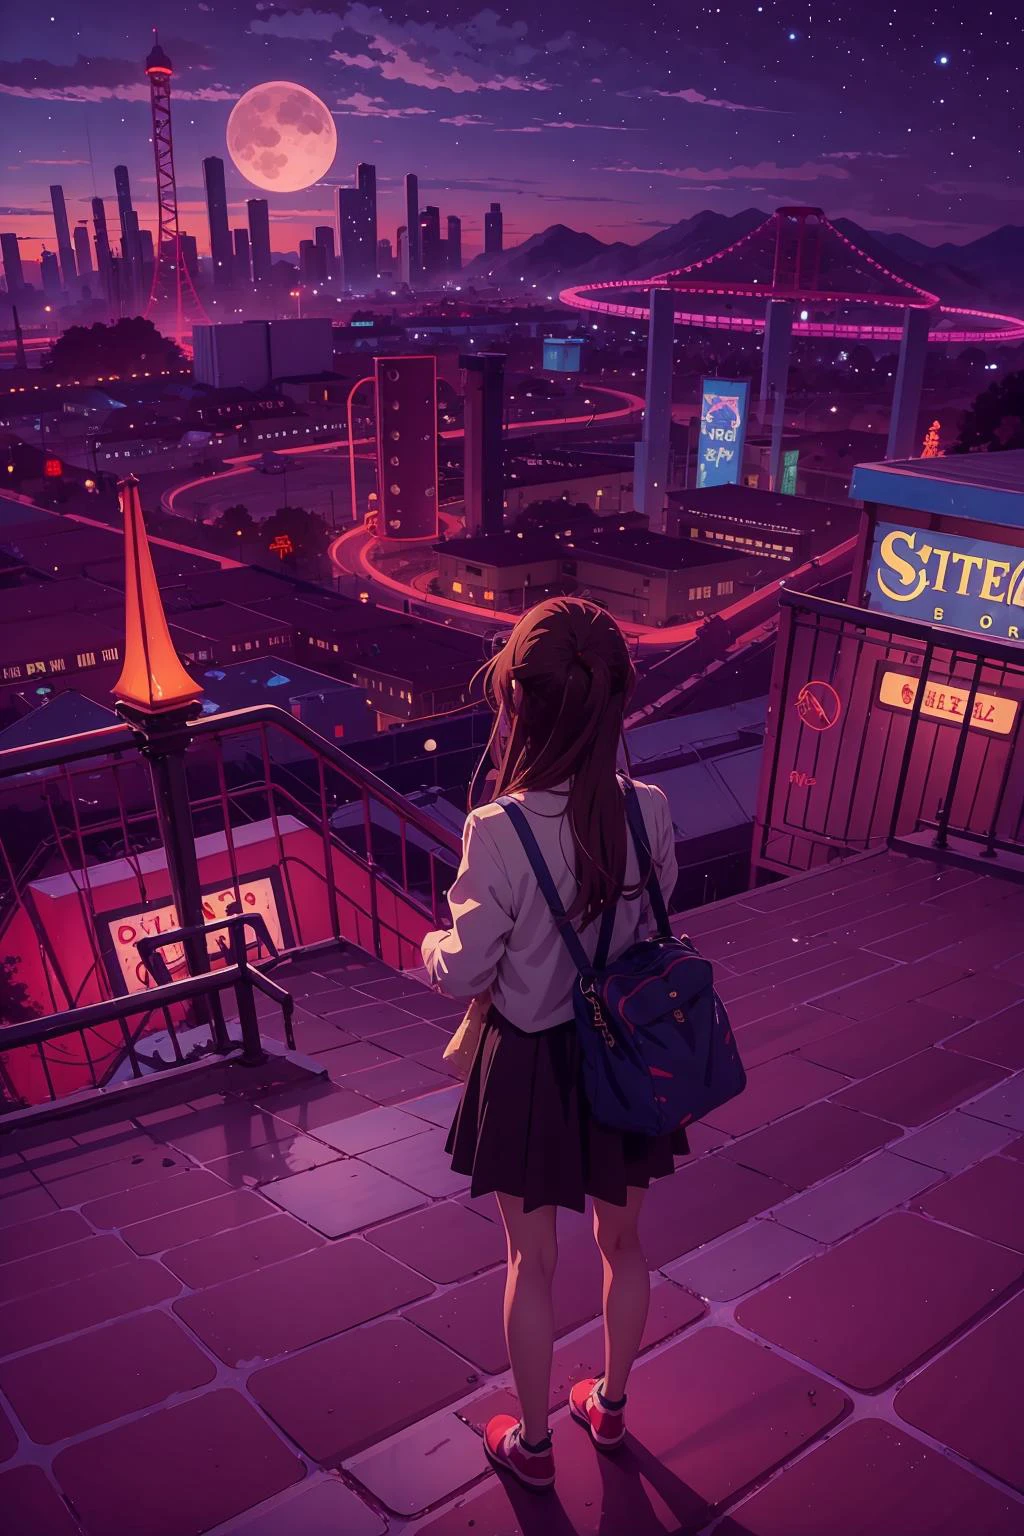 1 chica, (bosquejo:1.2),  Imagen clave del anime,  paisaje de un parque de atracciones brutal de otro mundo y megalópolis, Cielos despejados, Horror, F/8, velvia